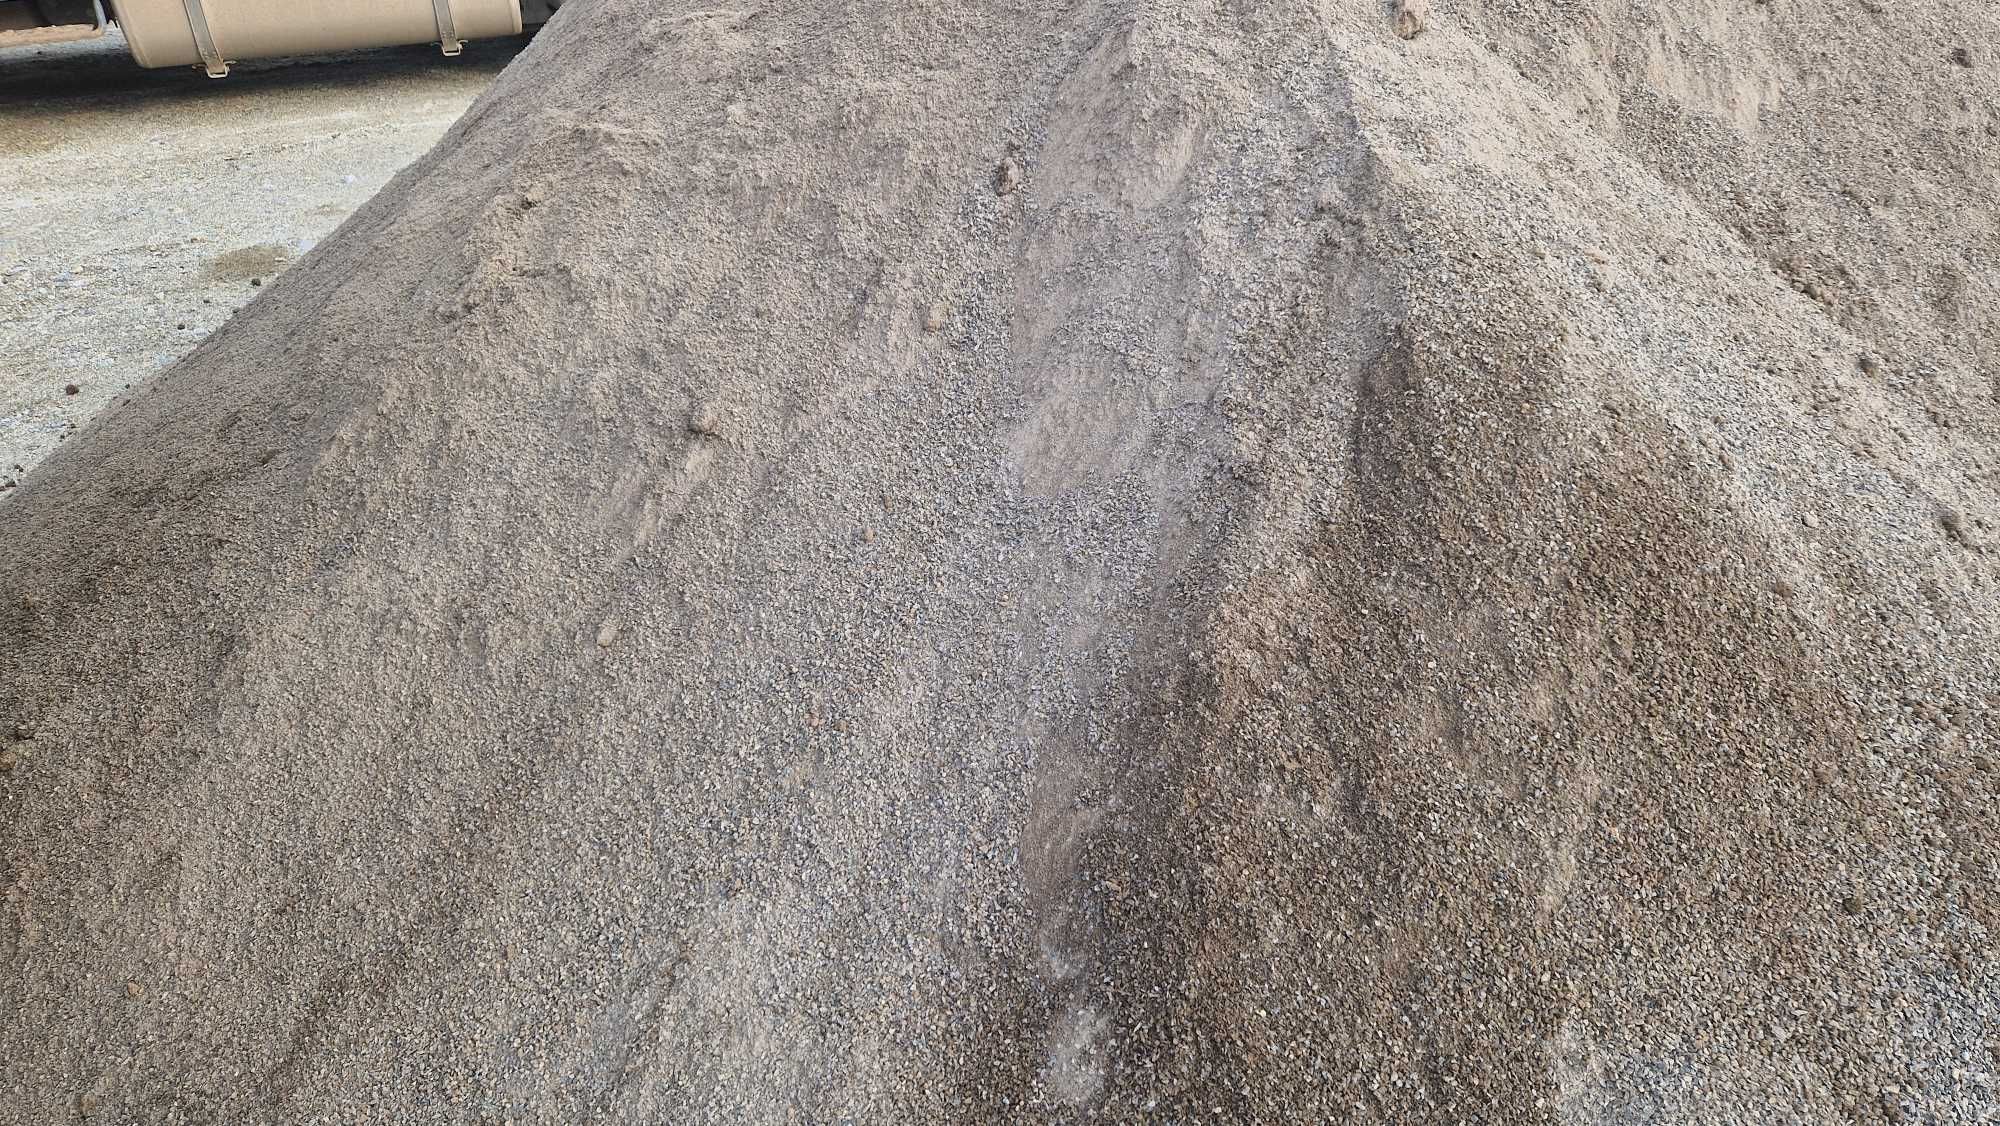 Mączka bazaltowa 0-4 zasypka do kostki kamiennej granitowej grysy bruk